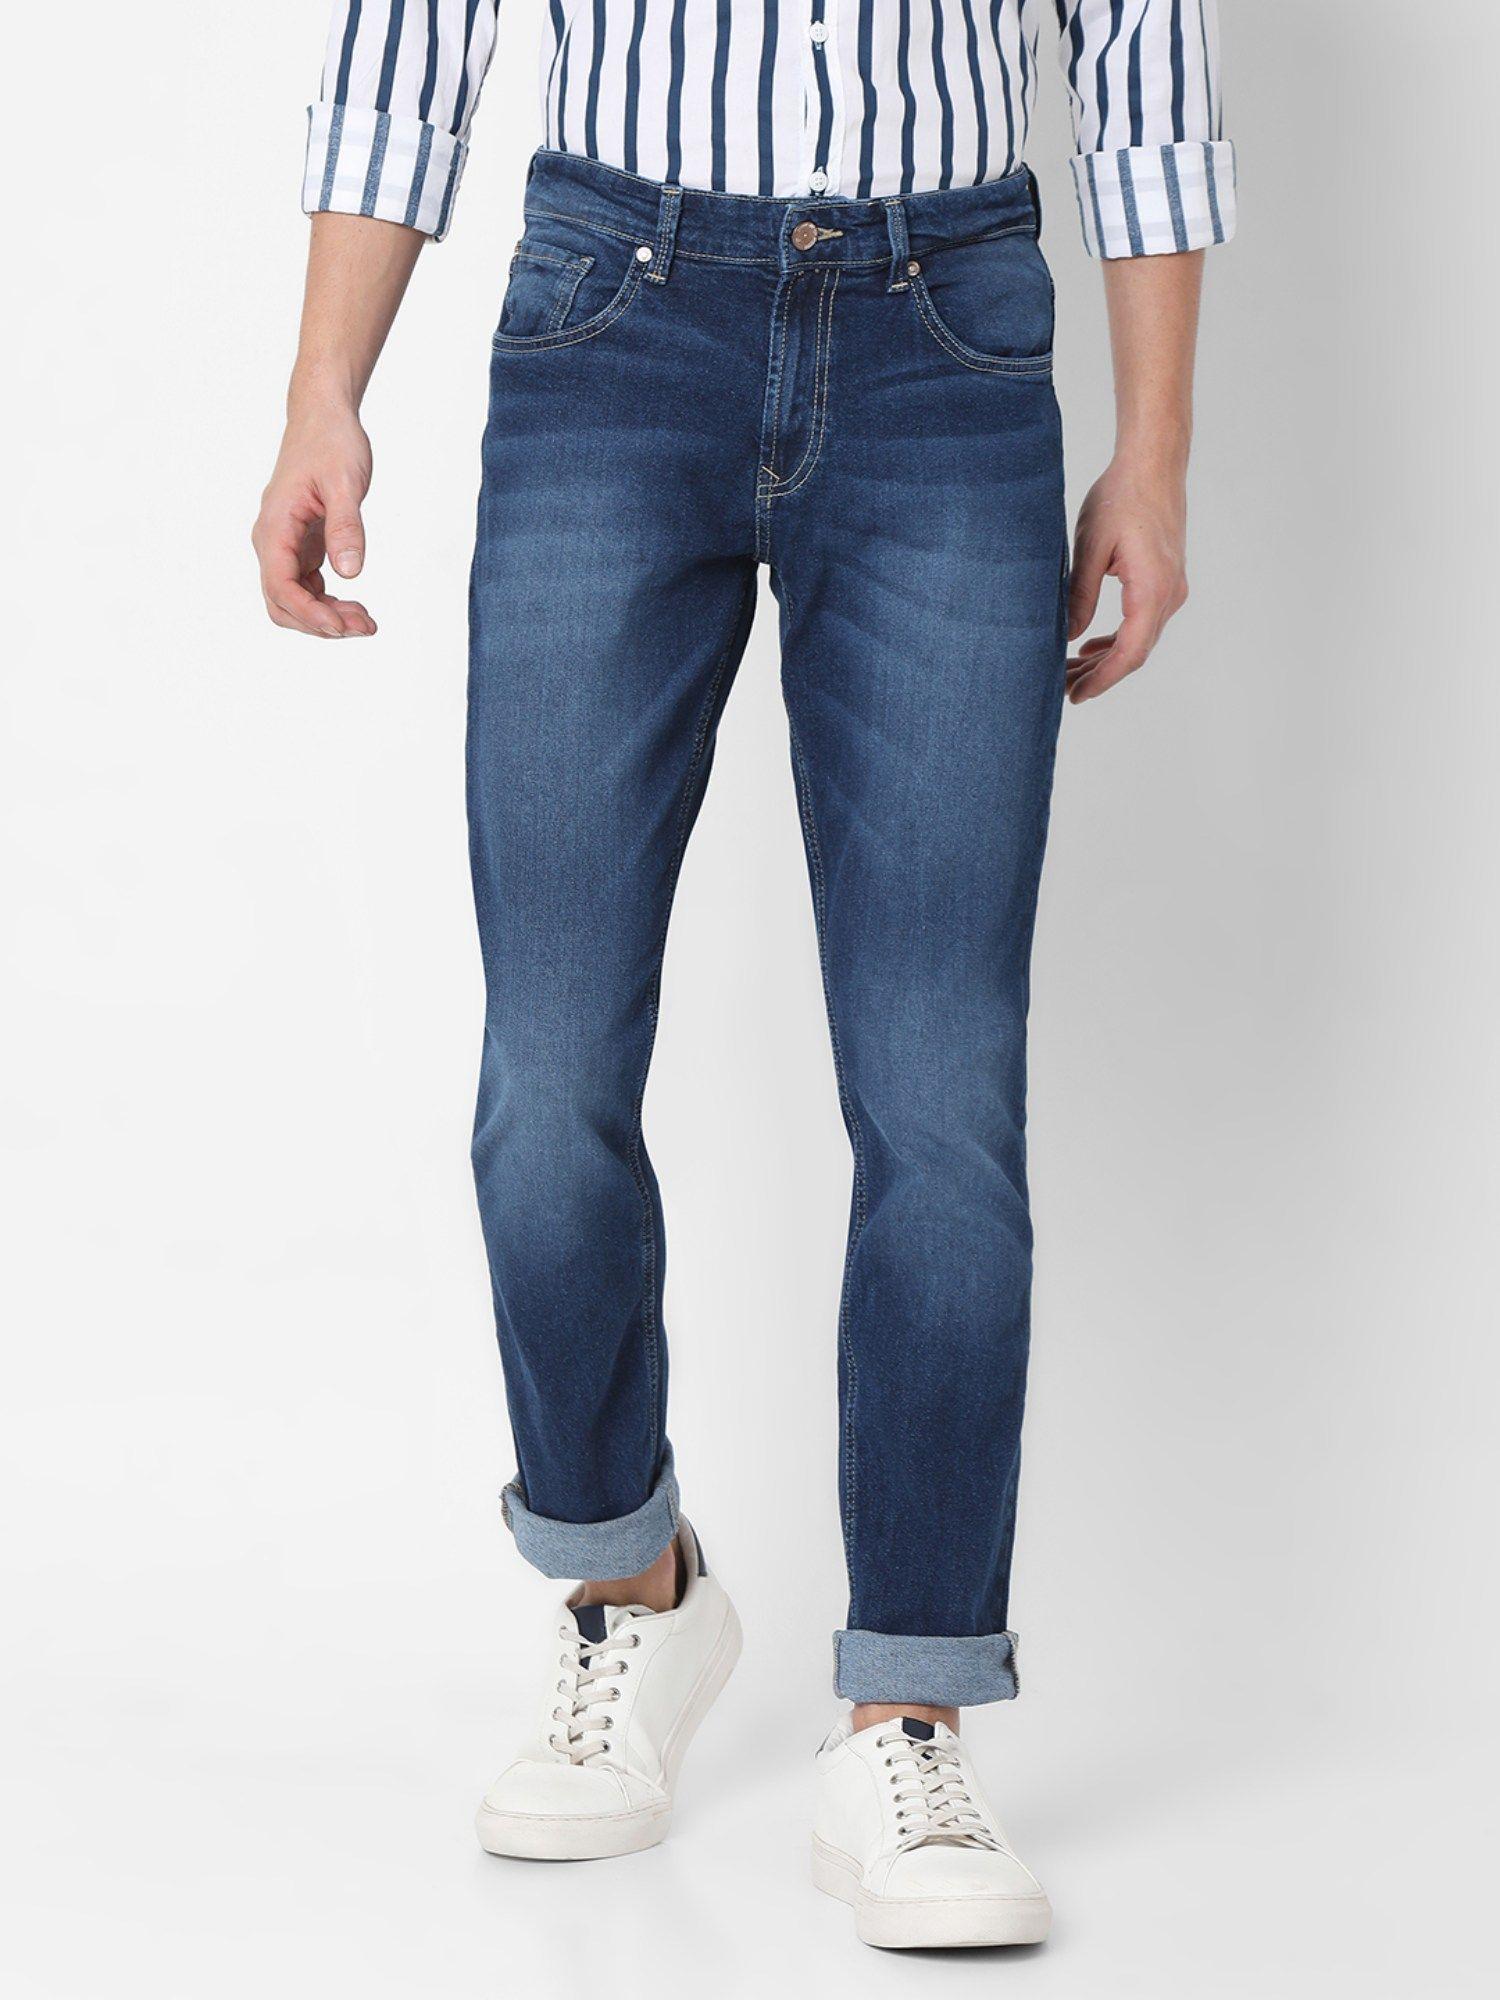 blue-slim-fit-jeans-for-men's